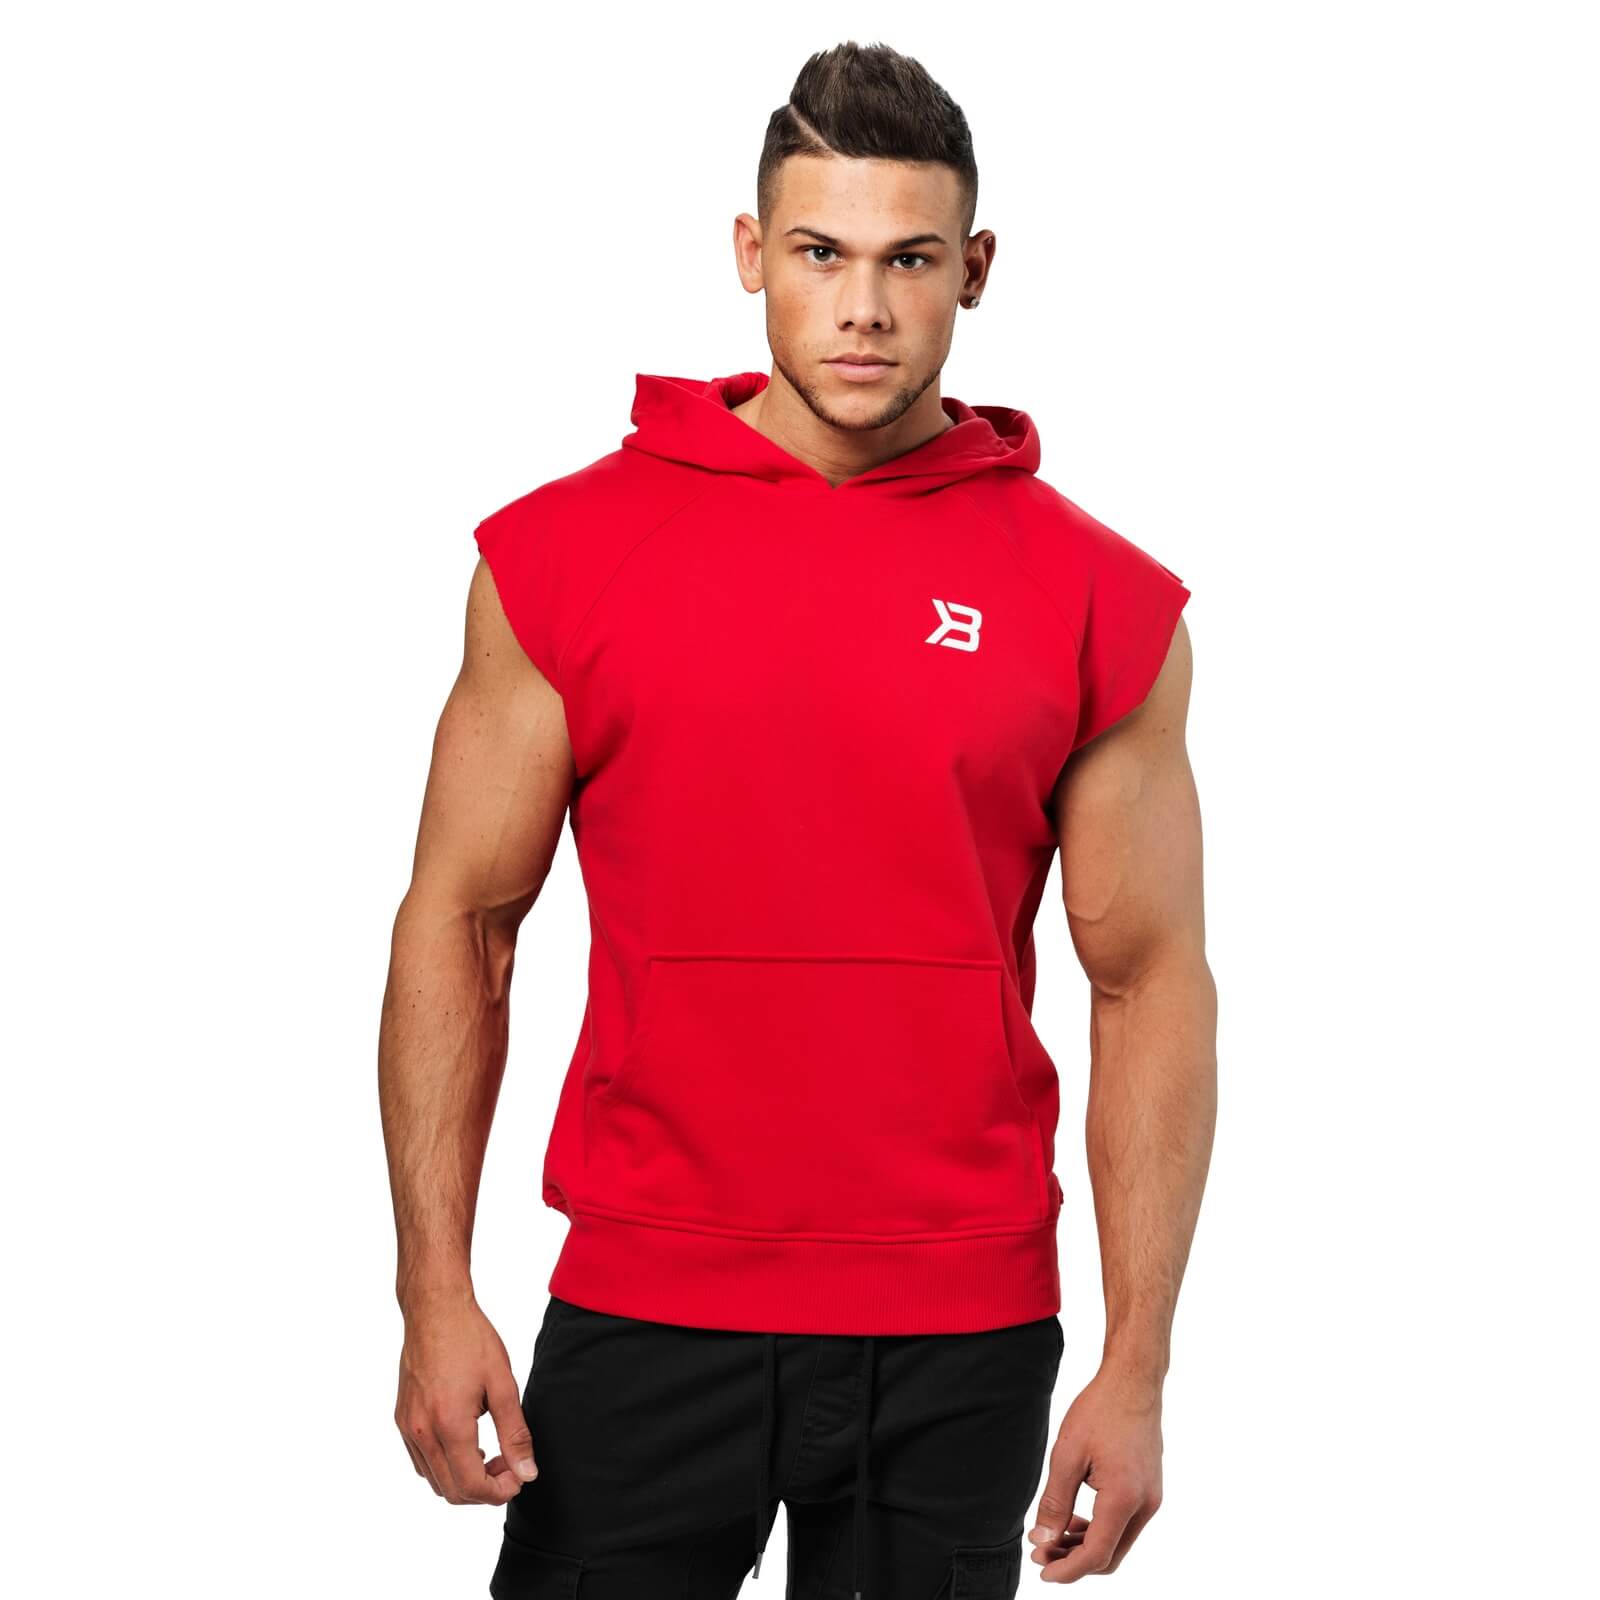 Sjekke Hudson Sl Sweater, bright red, Better Bodies hos SportGymButikken.no